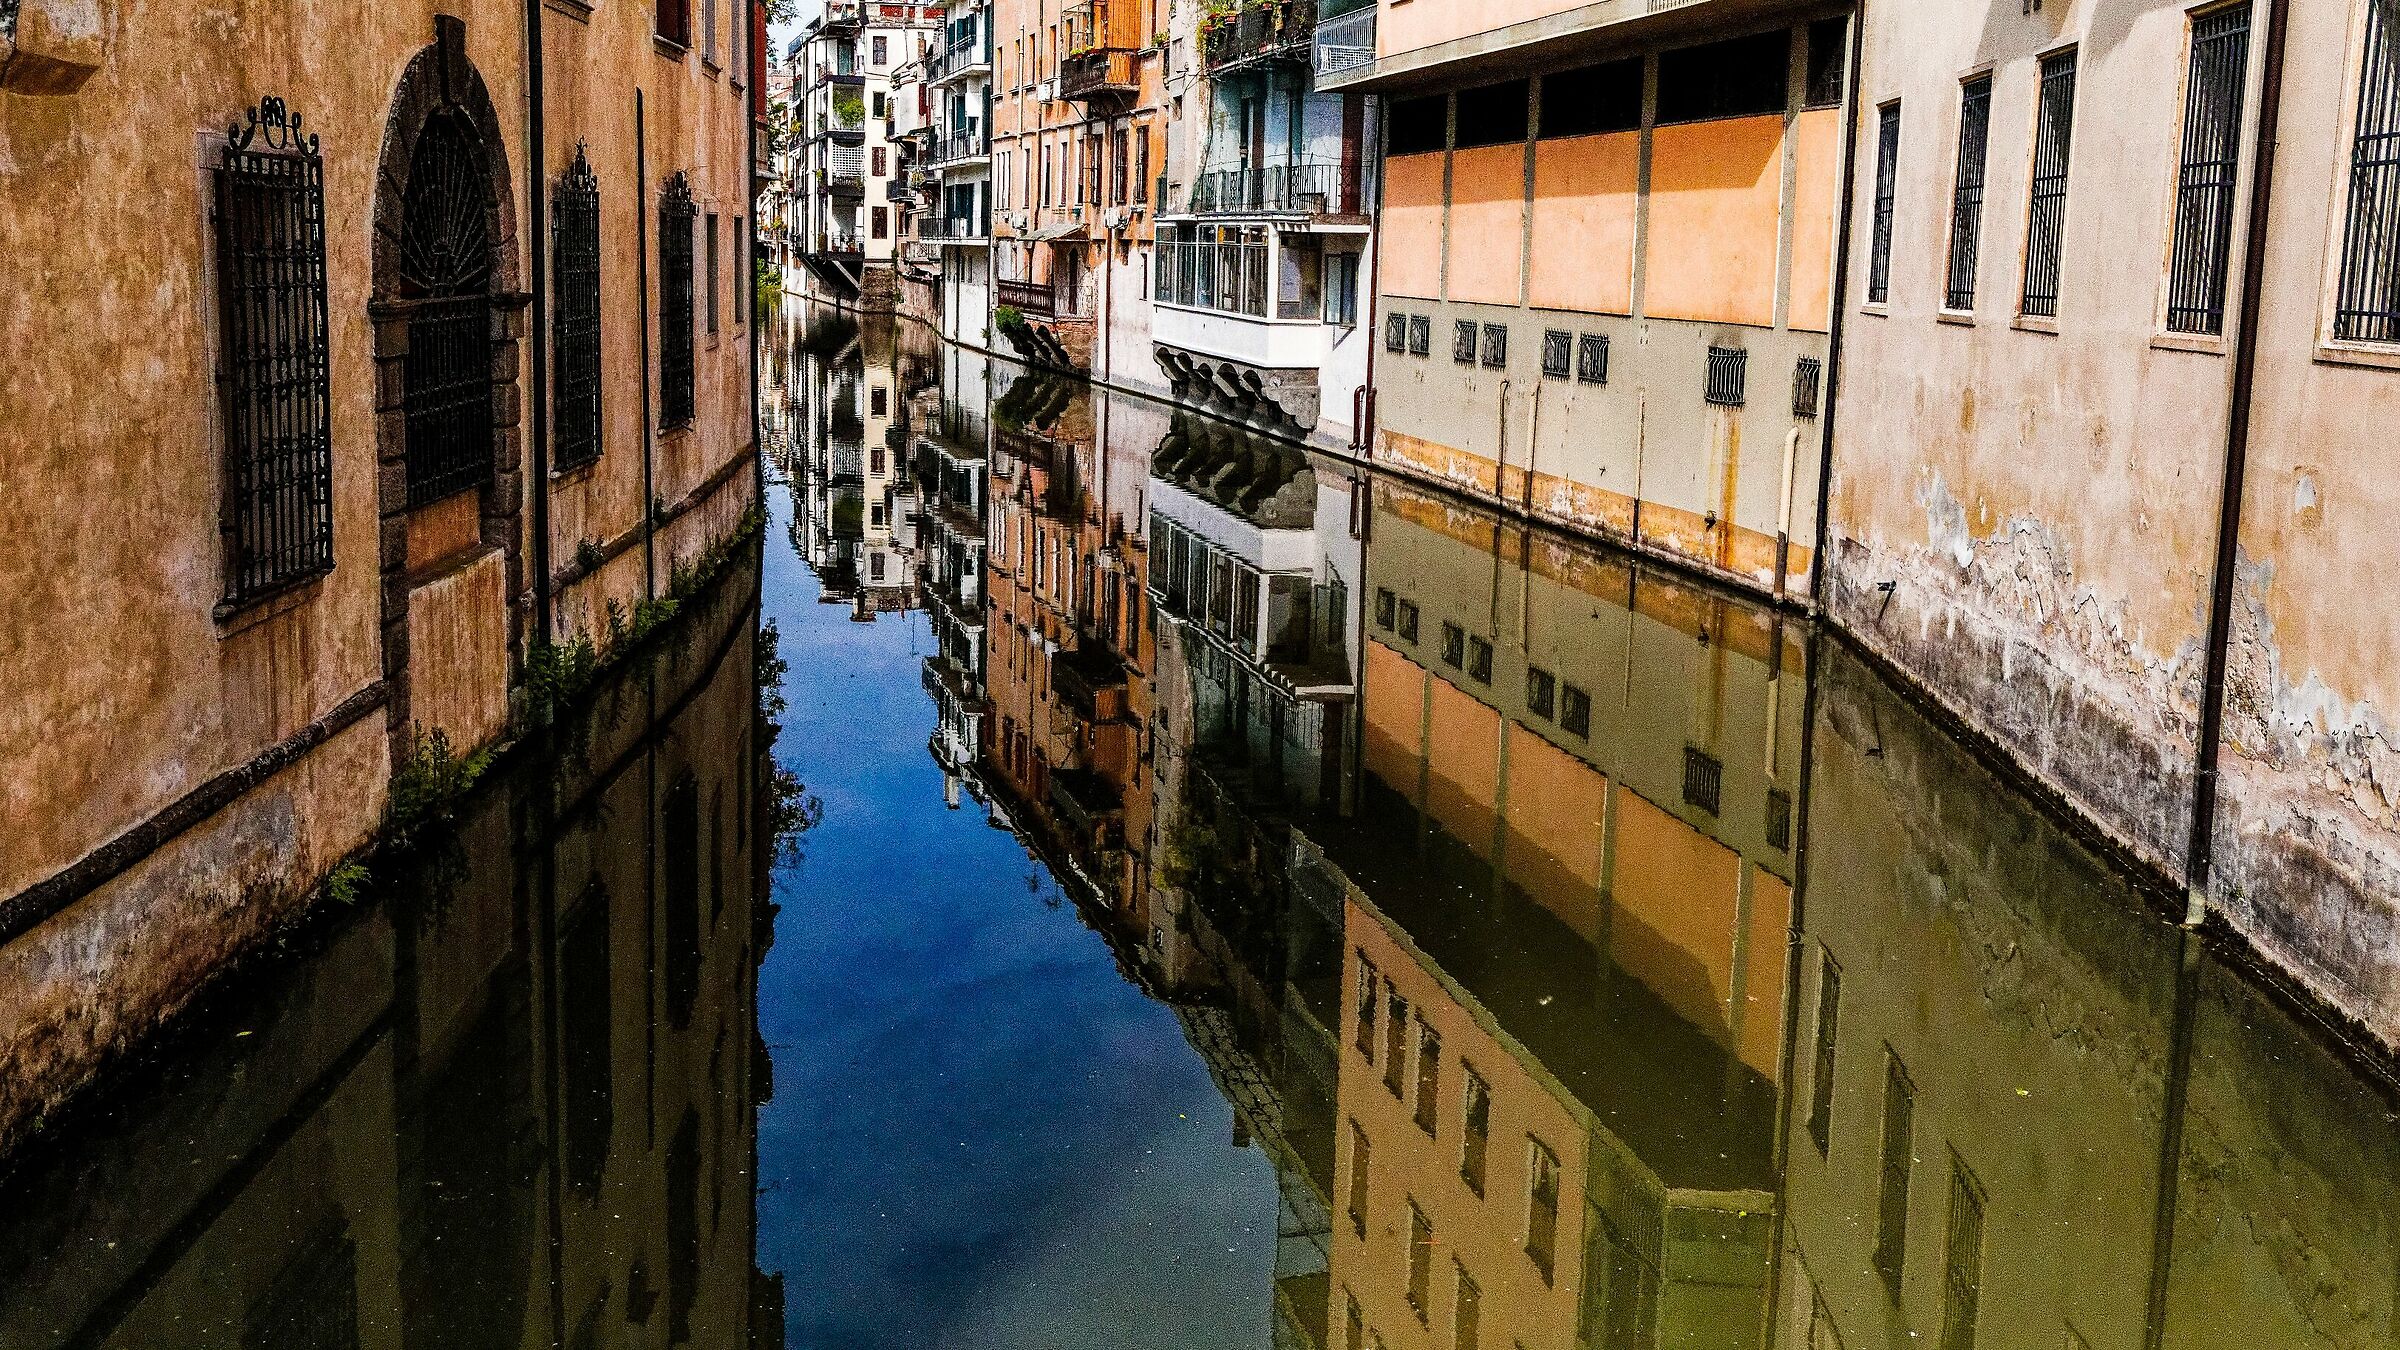 Padua as Venice?...